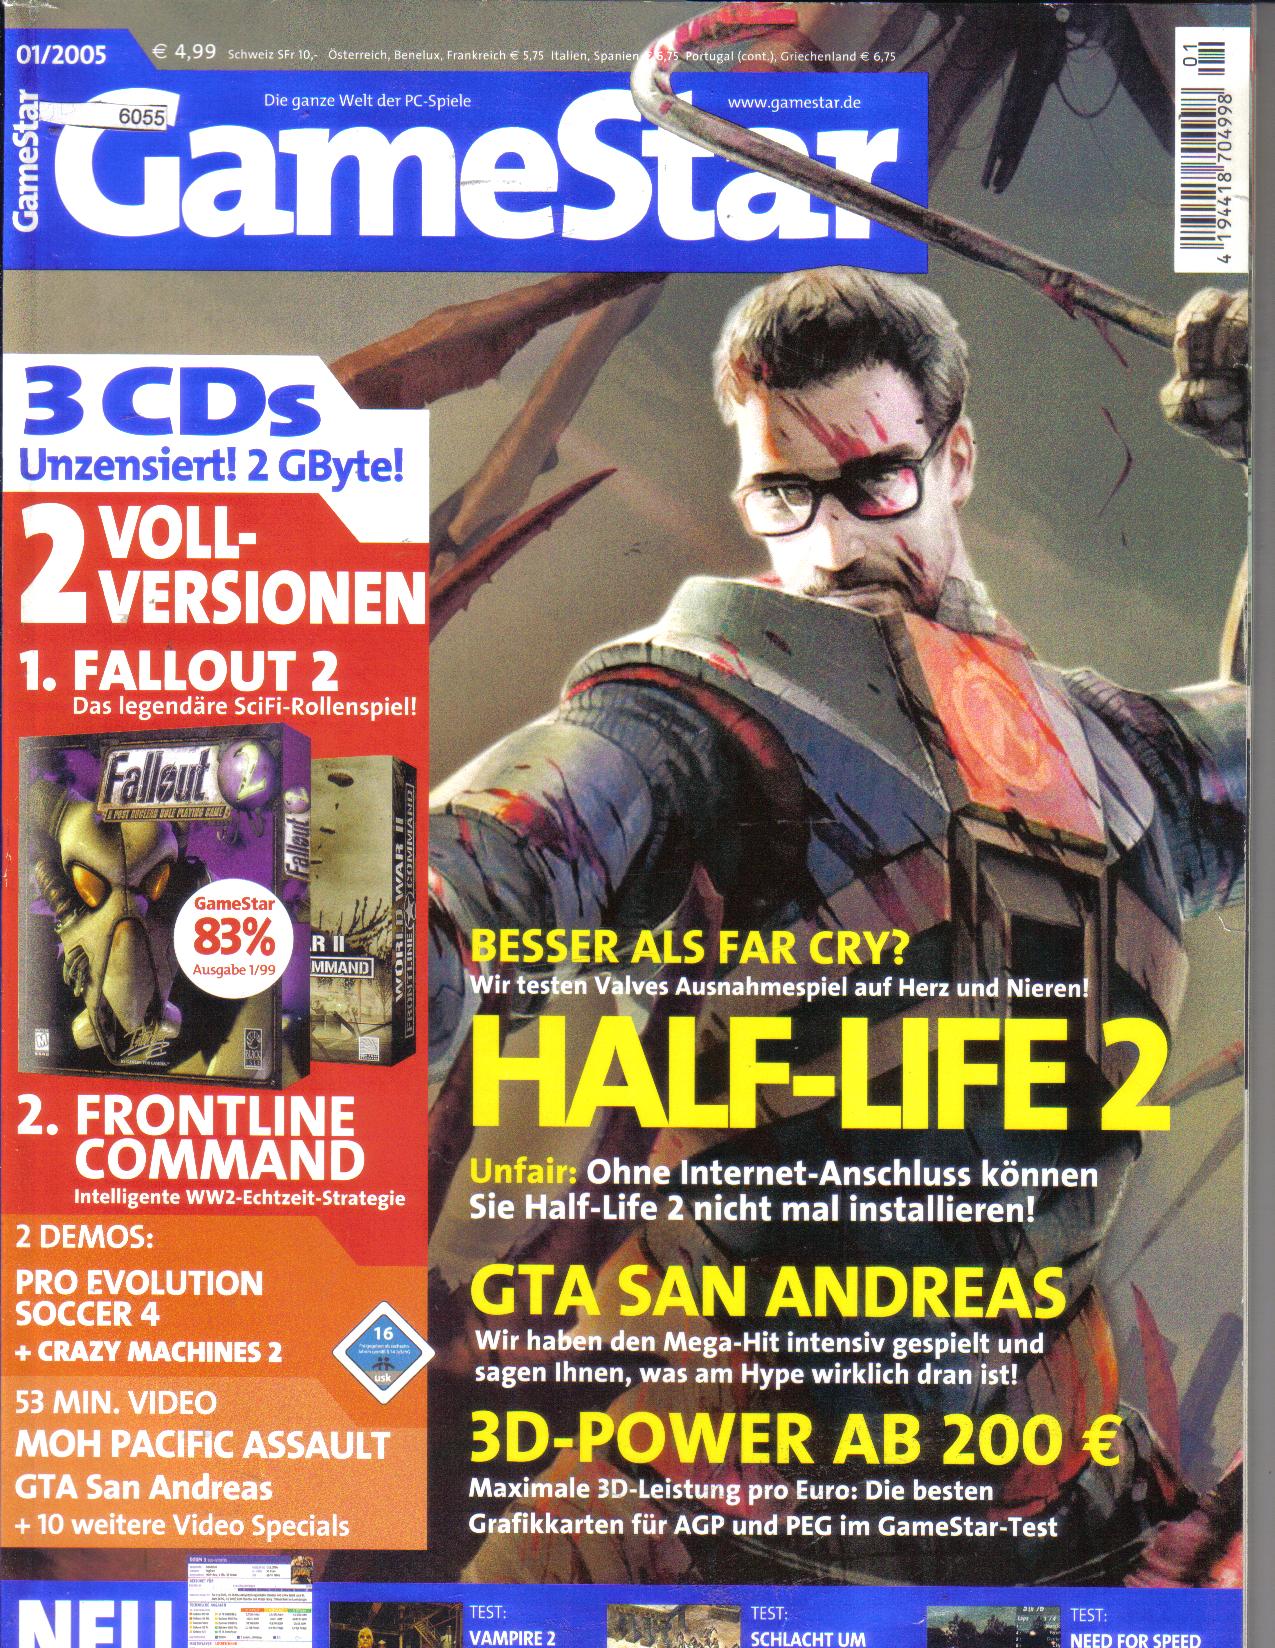 GameStar - Die ganze Welt der PC- Spiele2005